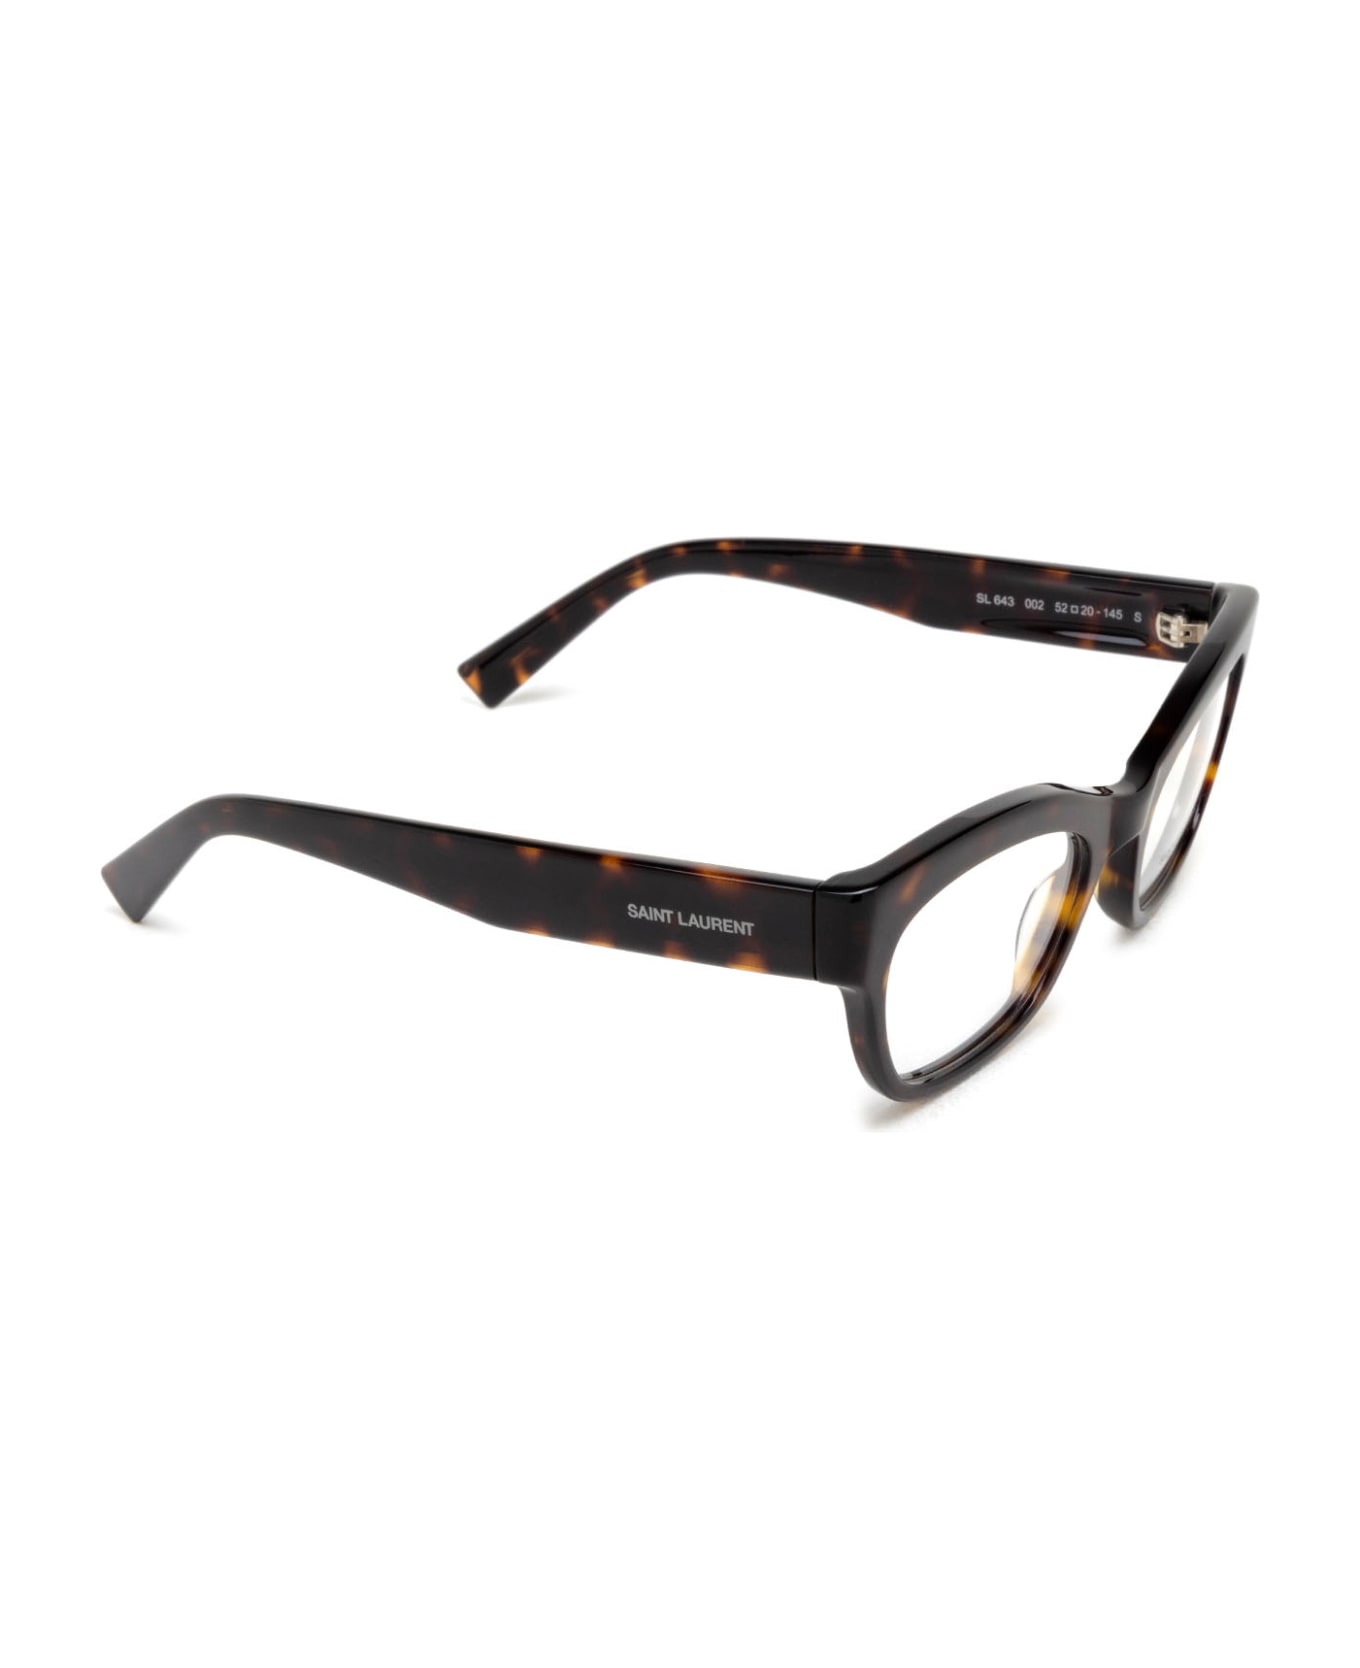 Saint Laurent Eyewear Sl 643 Havana Glasses - Havana アイウェア